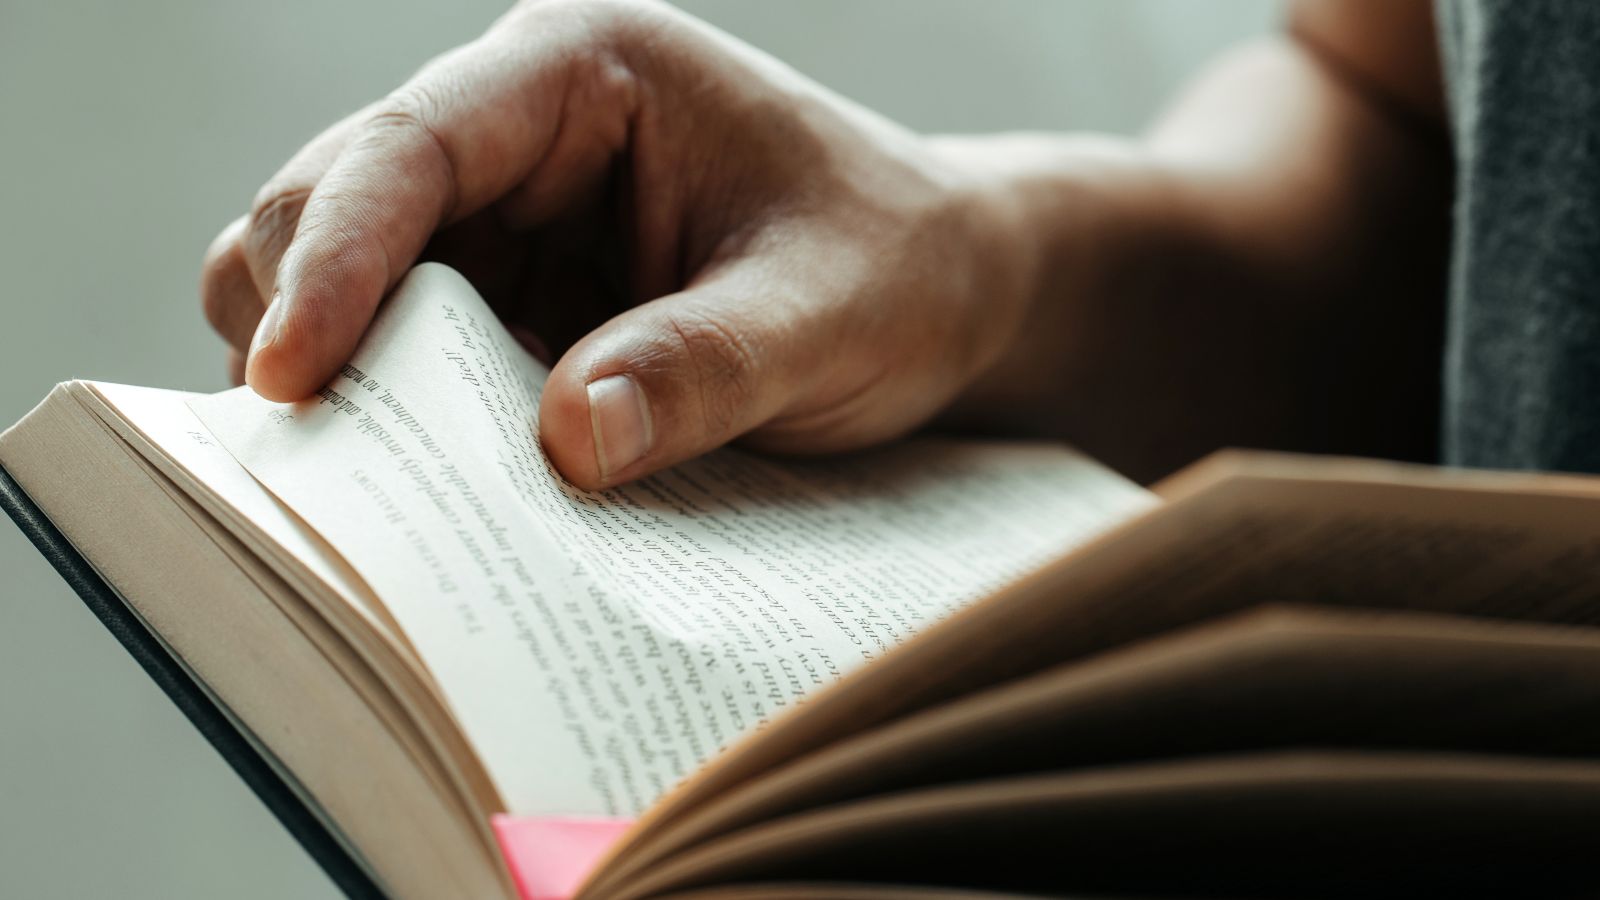 Eine Person liest in einem Buch. Zu sehen ist neben dem Buch mit lila Seitenmarkierung auch die rechte Hand, die gerade umblättert.